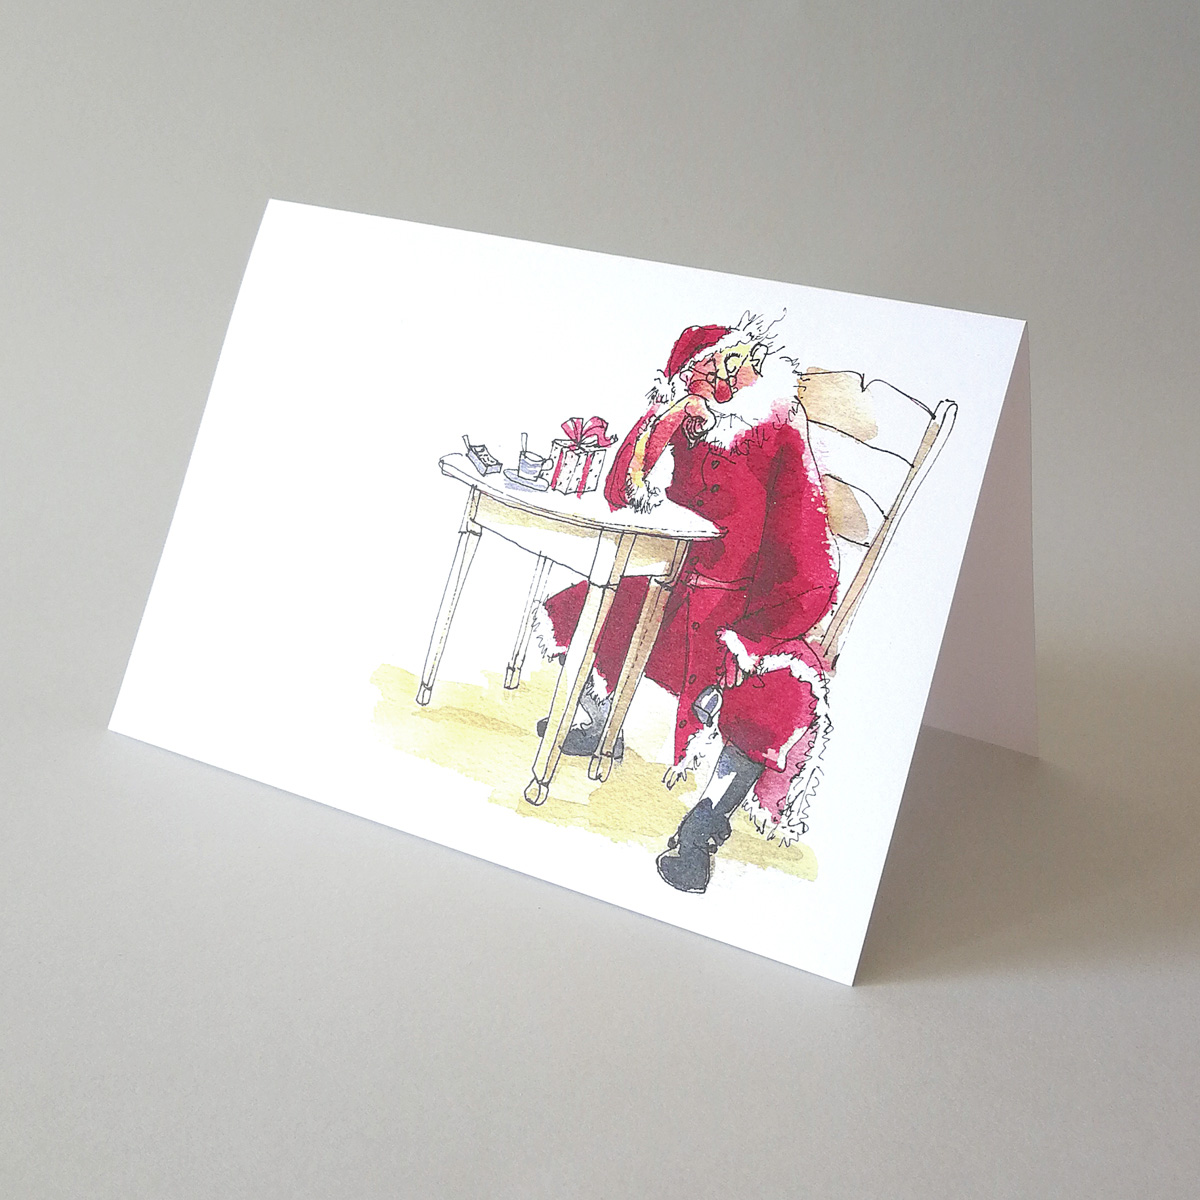 Chillen nach Weihnachten - Der Weihnachtsmann erholt sich, illustrierte Weihnachtskarten